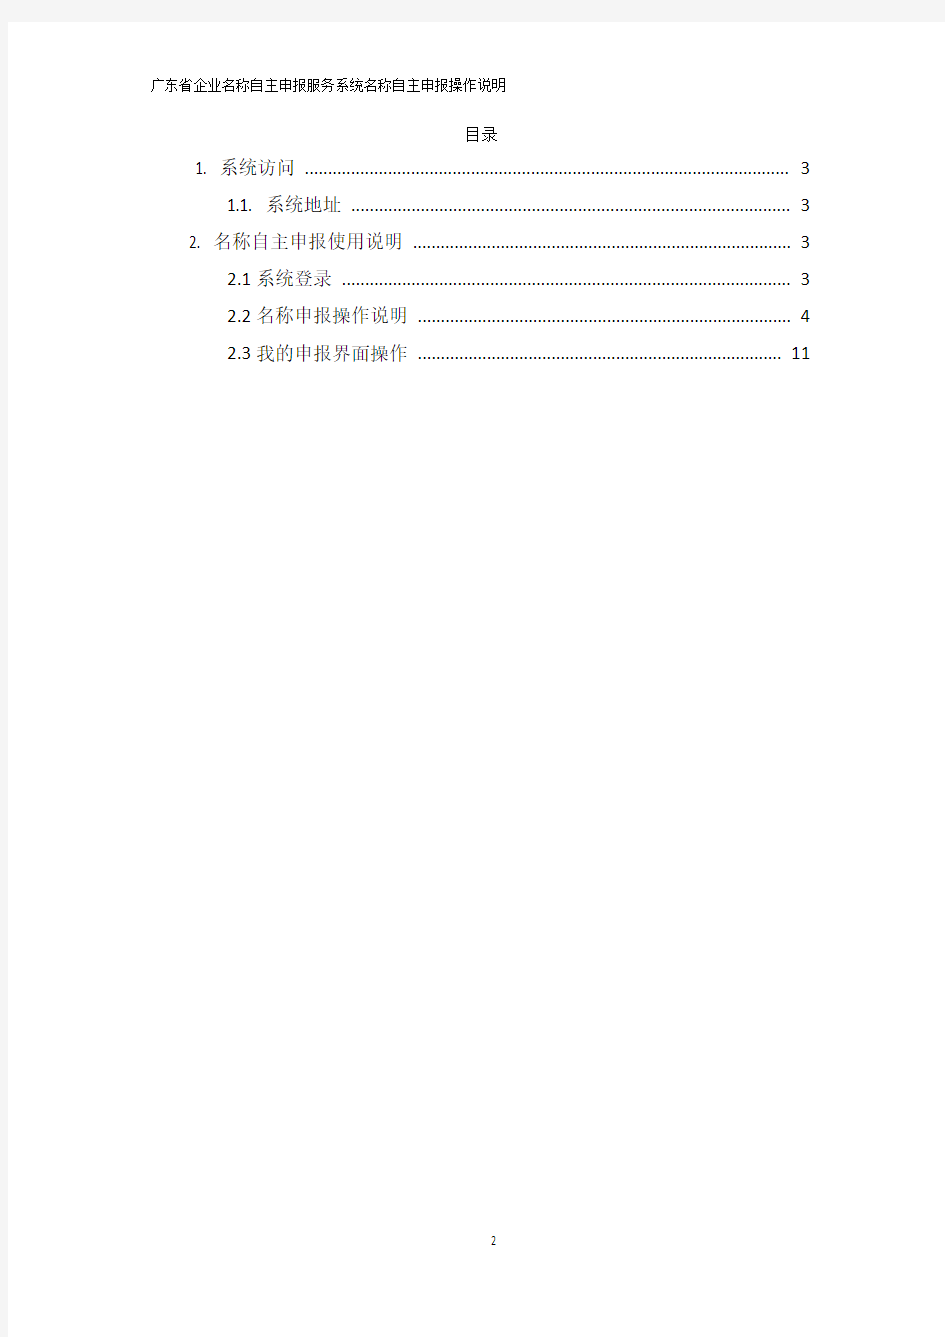 广东省企业名称自主申报服务系统